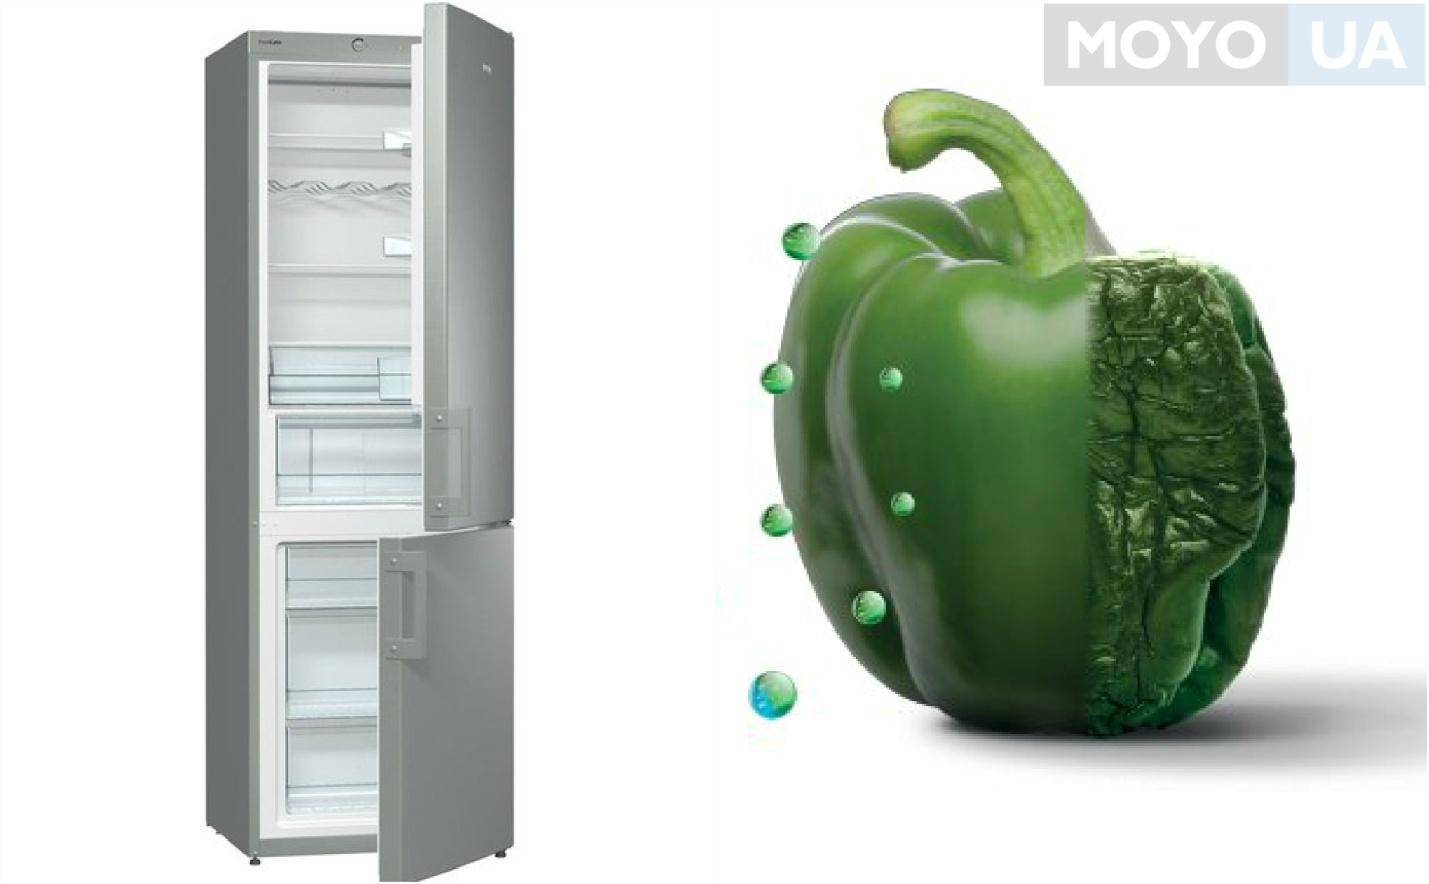 Холодильники gorenje: топ-7 лучших моделей, отзывы, советы покупателям